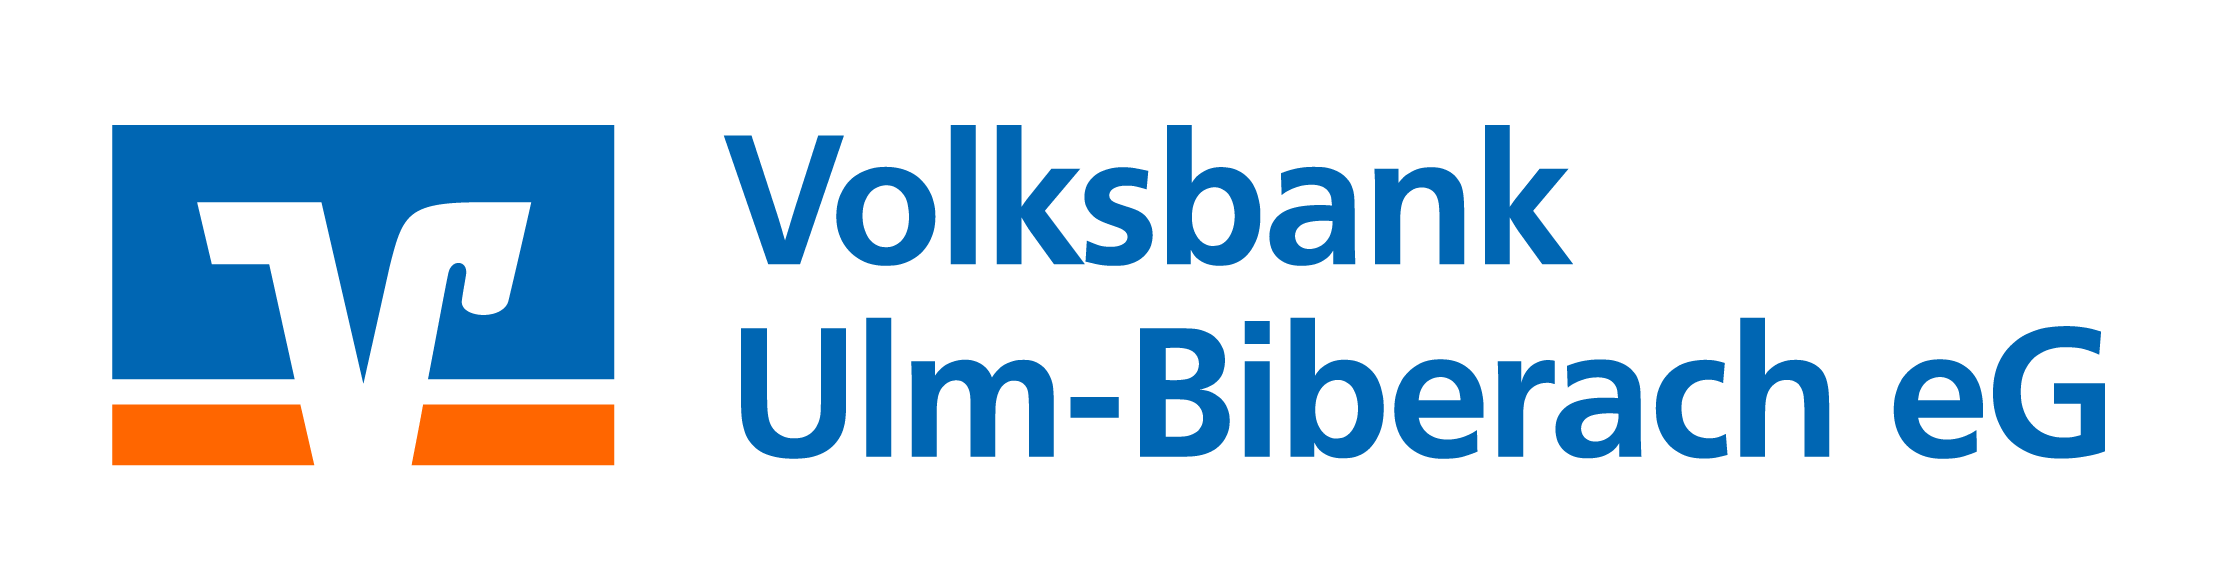 Mit freundlicher Unterstützung der Volksbank Ulm-Biberach